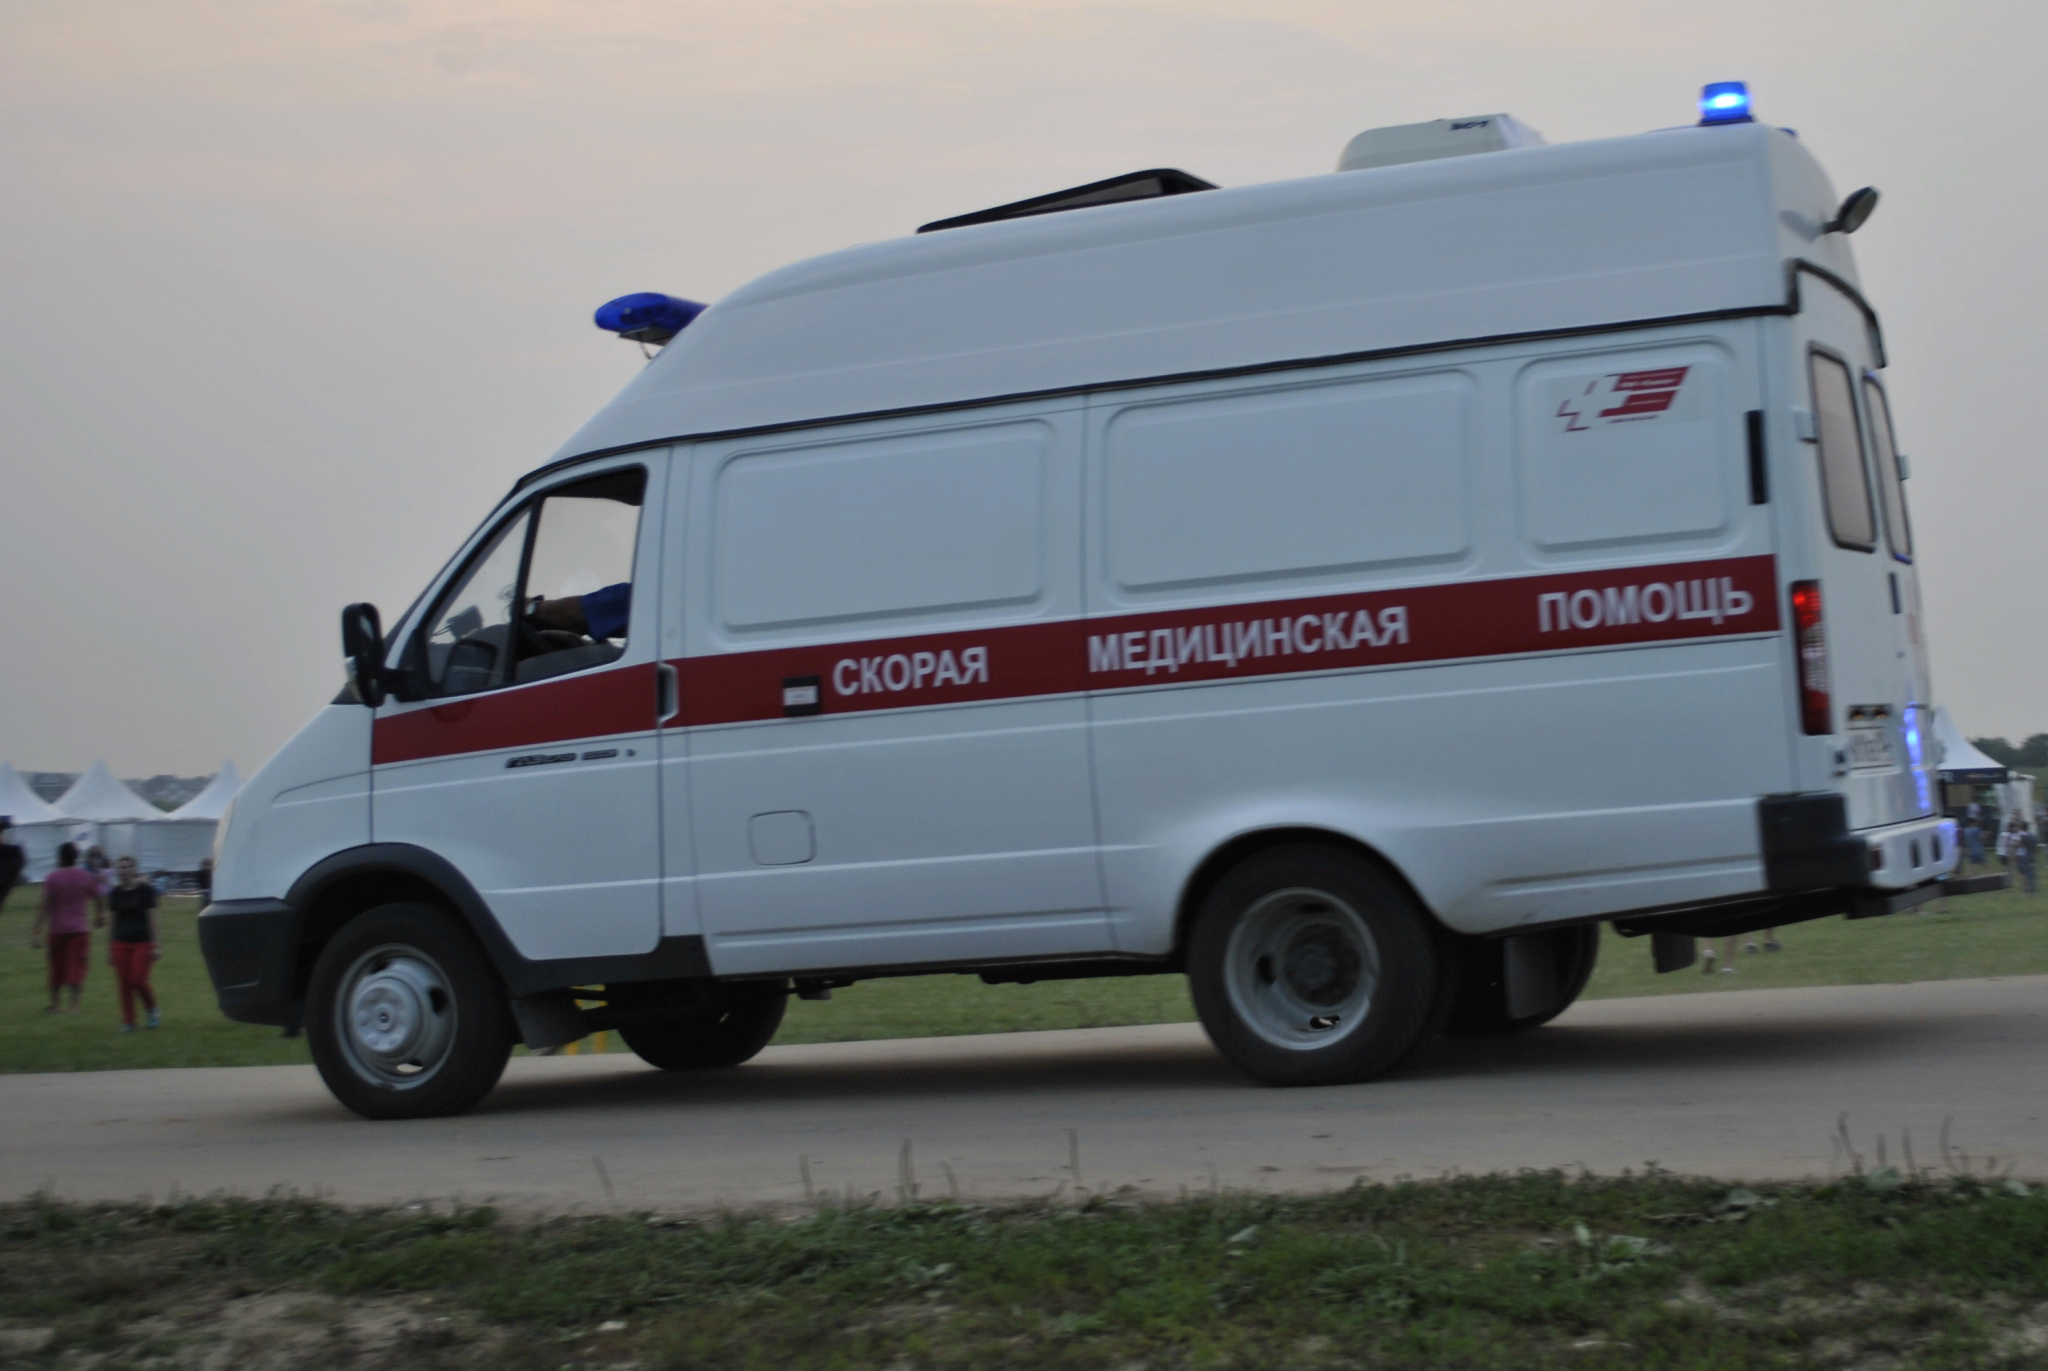 Пенсионера насмерть сбил грузовик в Нижегородской области